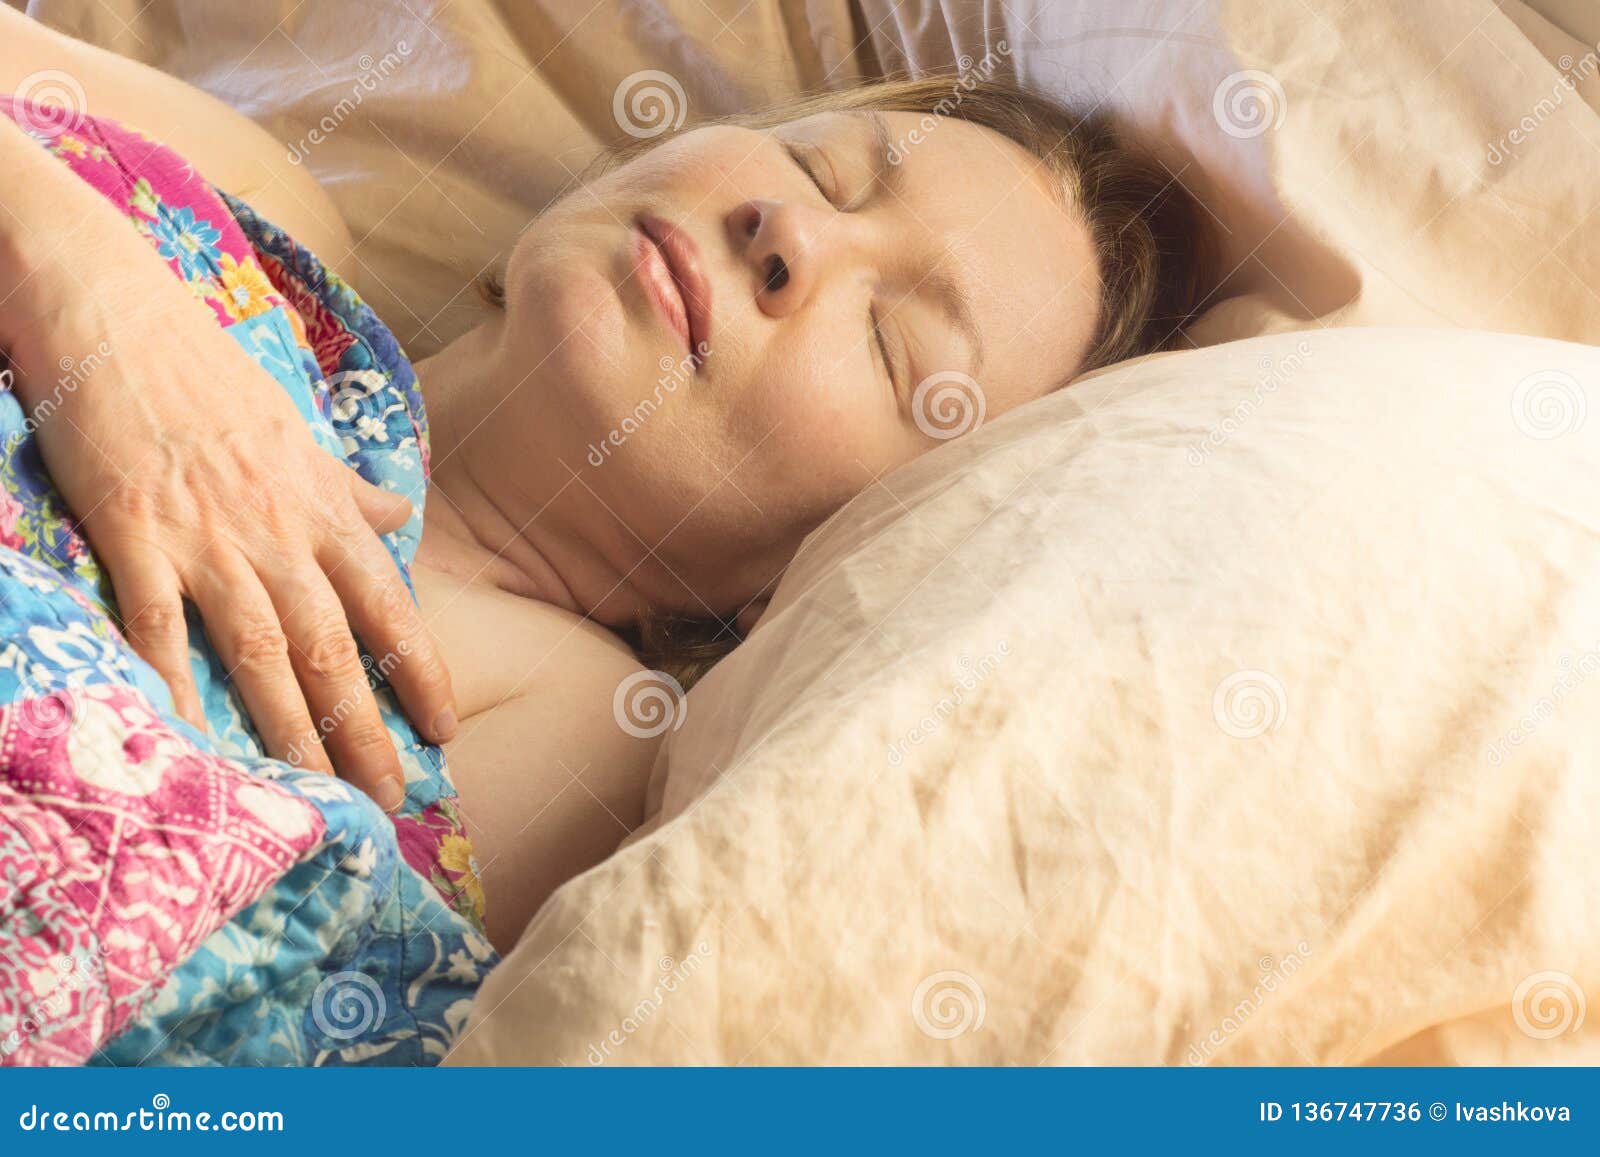 Русские зрелые спящие мамы. Спящие пожилые женщины. Спящие взрослые женщины. Русские женщины фото спящие.